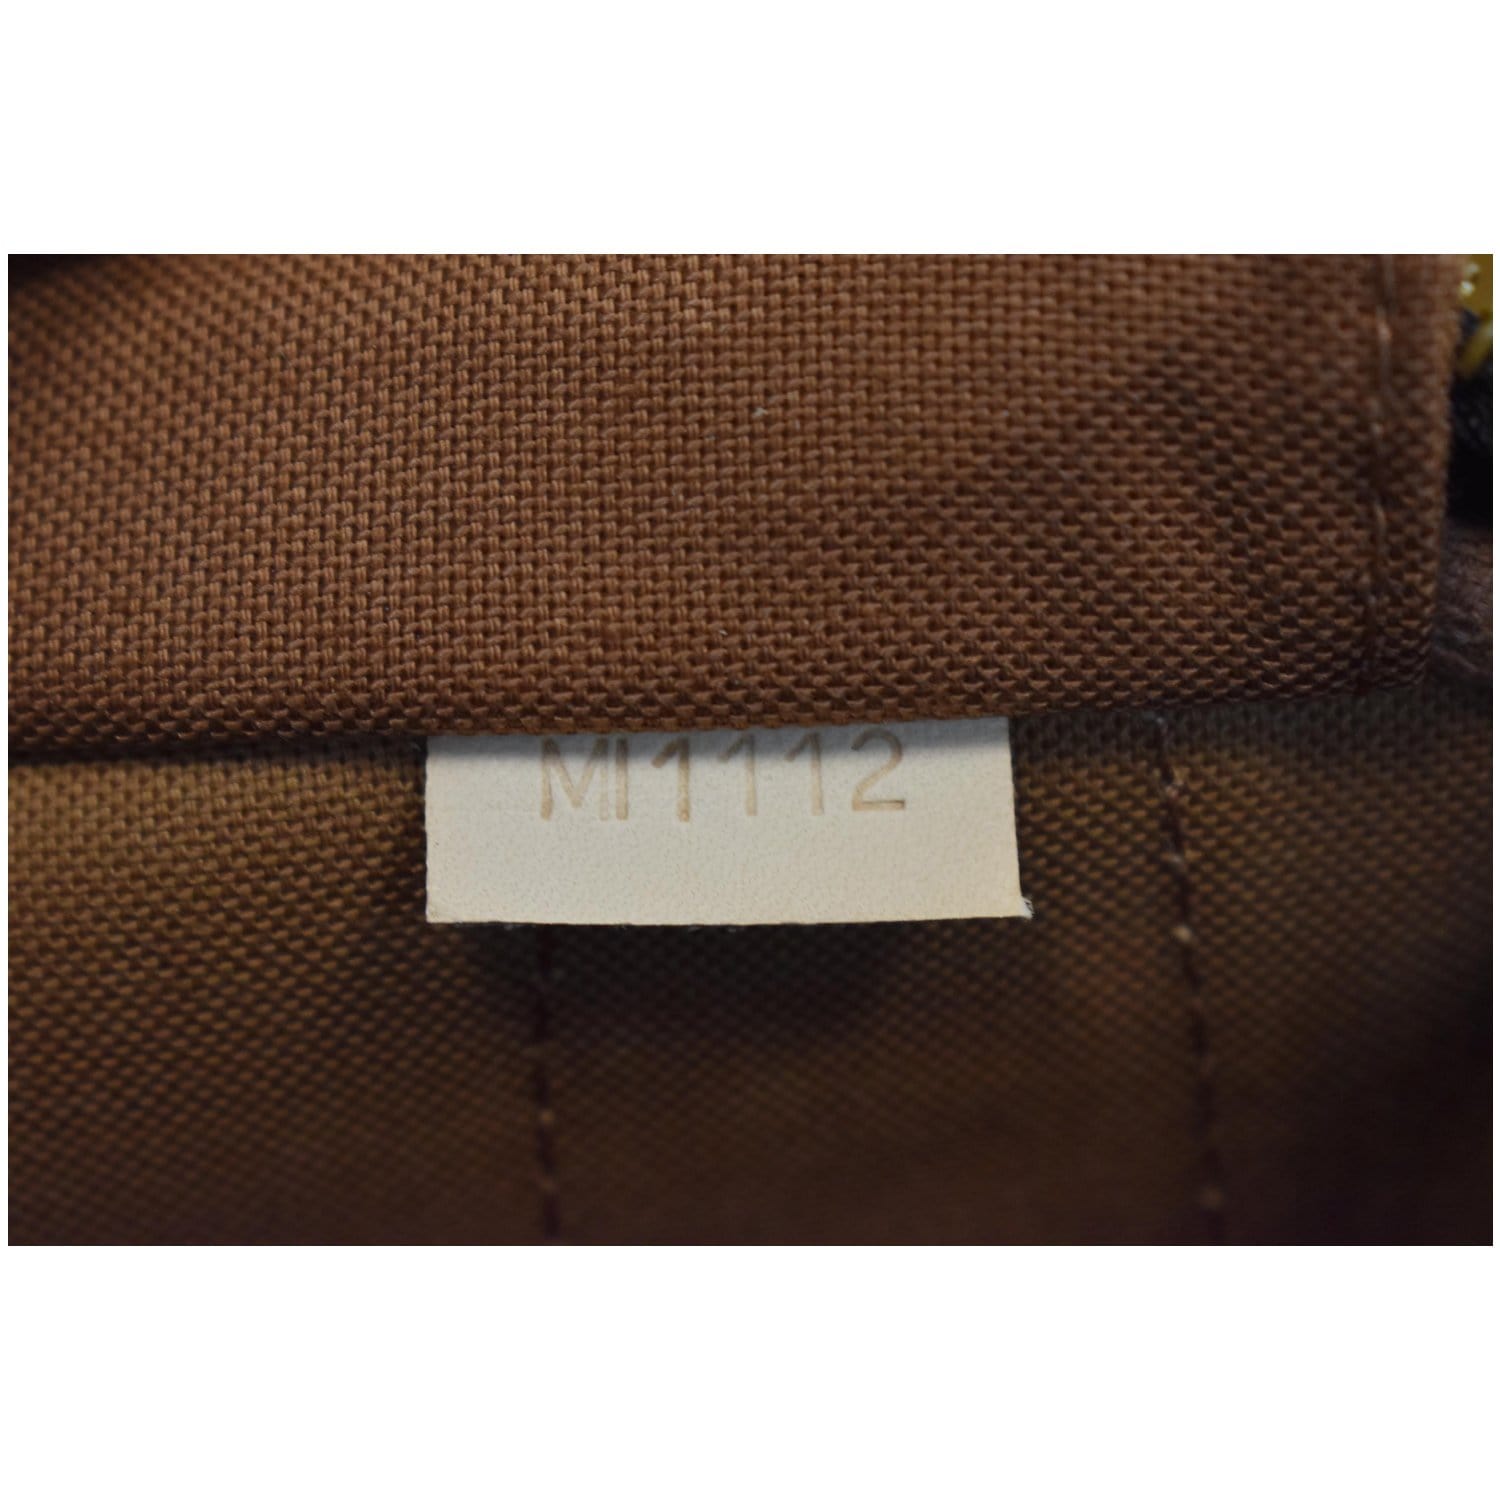 Louis Vuitton 2012 pre-owned Monogram Montorgueil GM Shoulder Bag - Farfetch